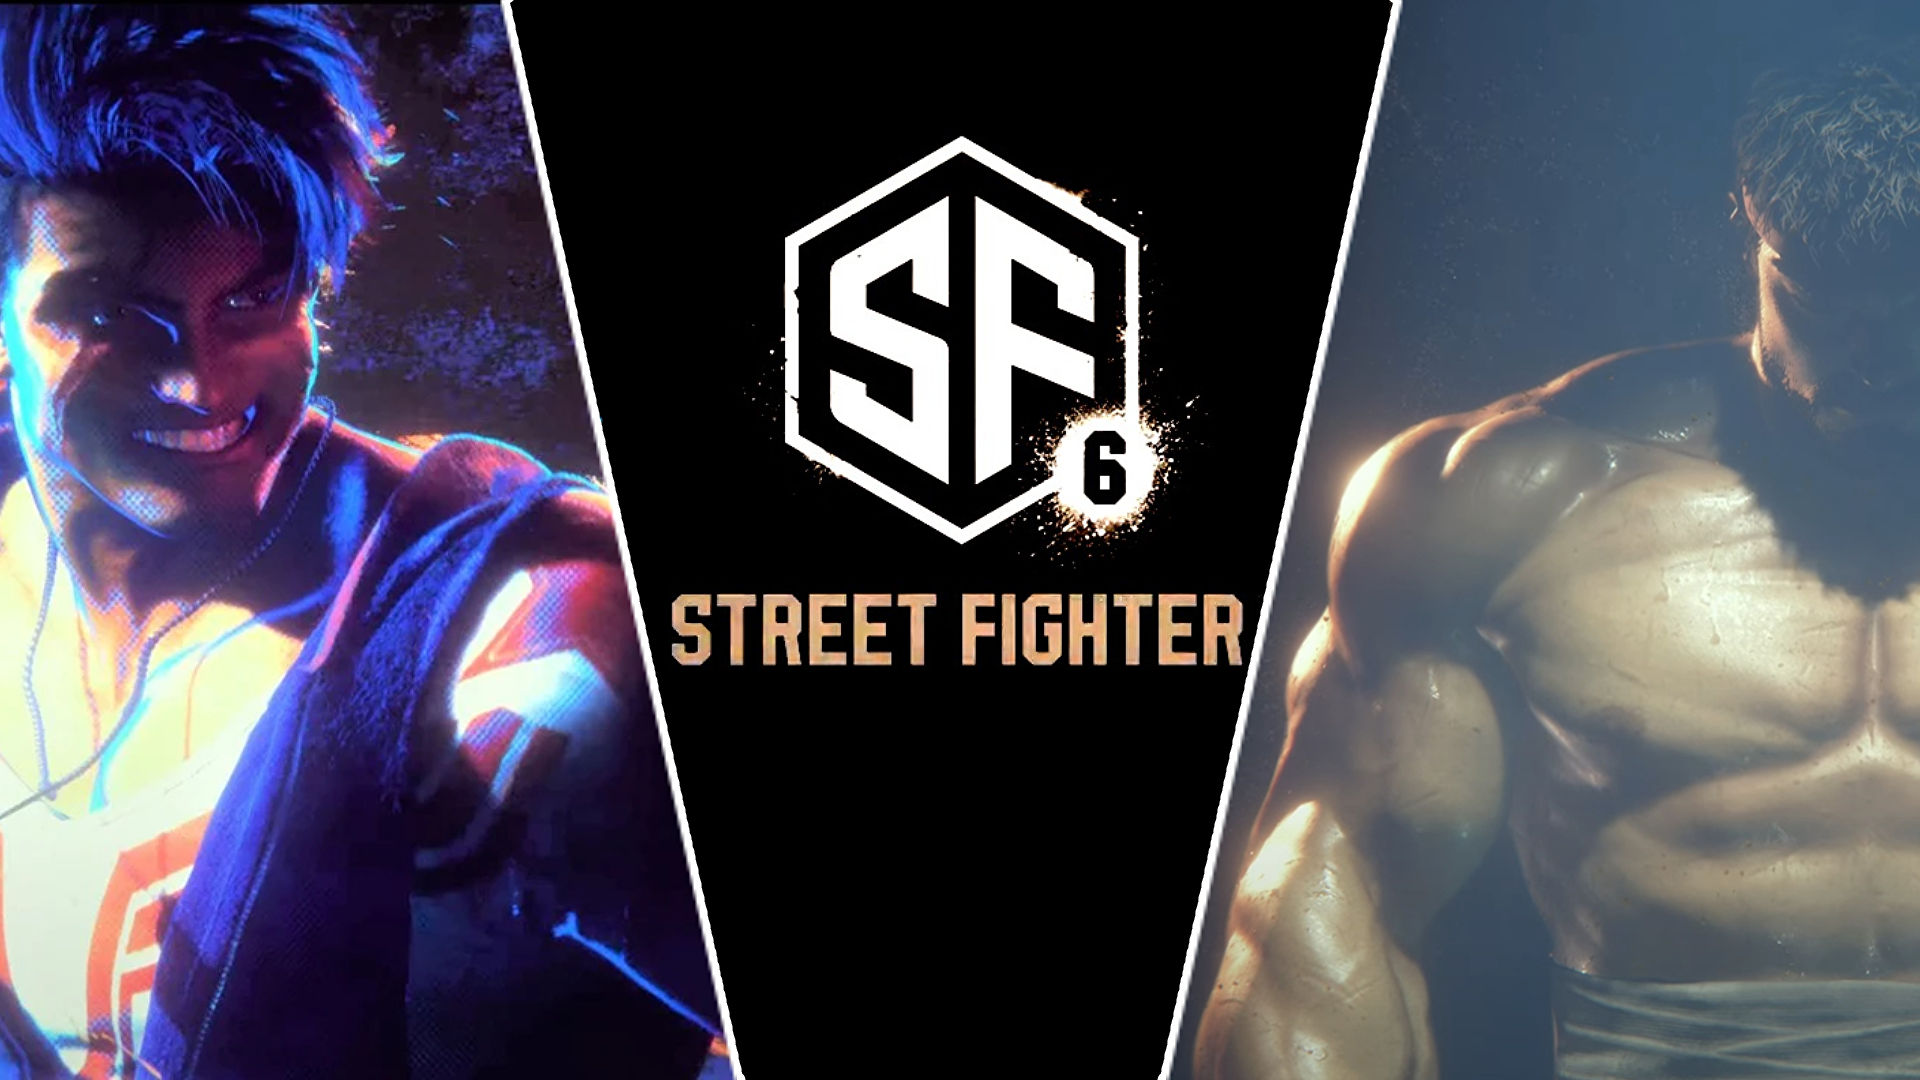 CAMPANHA R3T0RN0 A STREET FIGHTER – Volte para o SF6! – Resumo